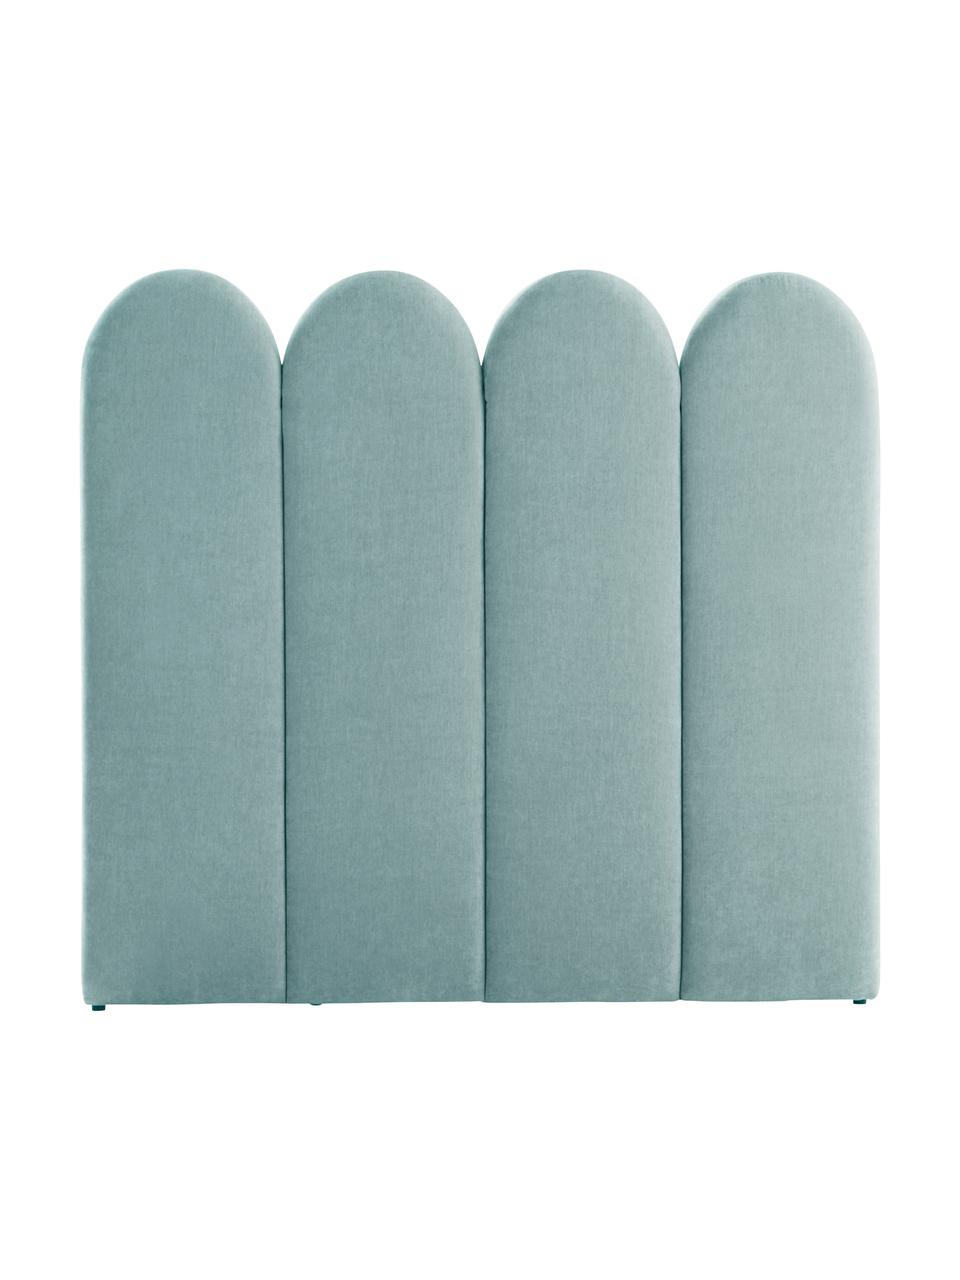 Tête de lit rembourrée tissu chenille Miami, Tissu turquoise, larg. 185 x haut. 124 cm